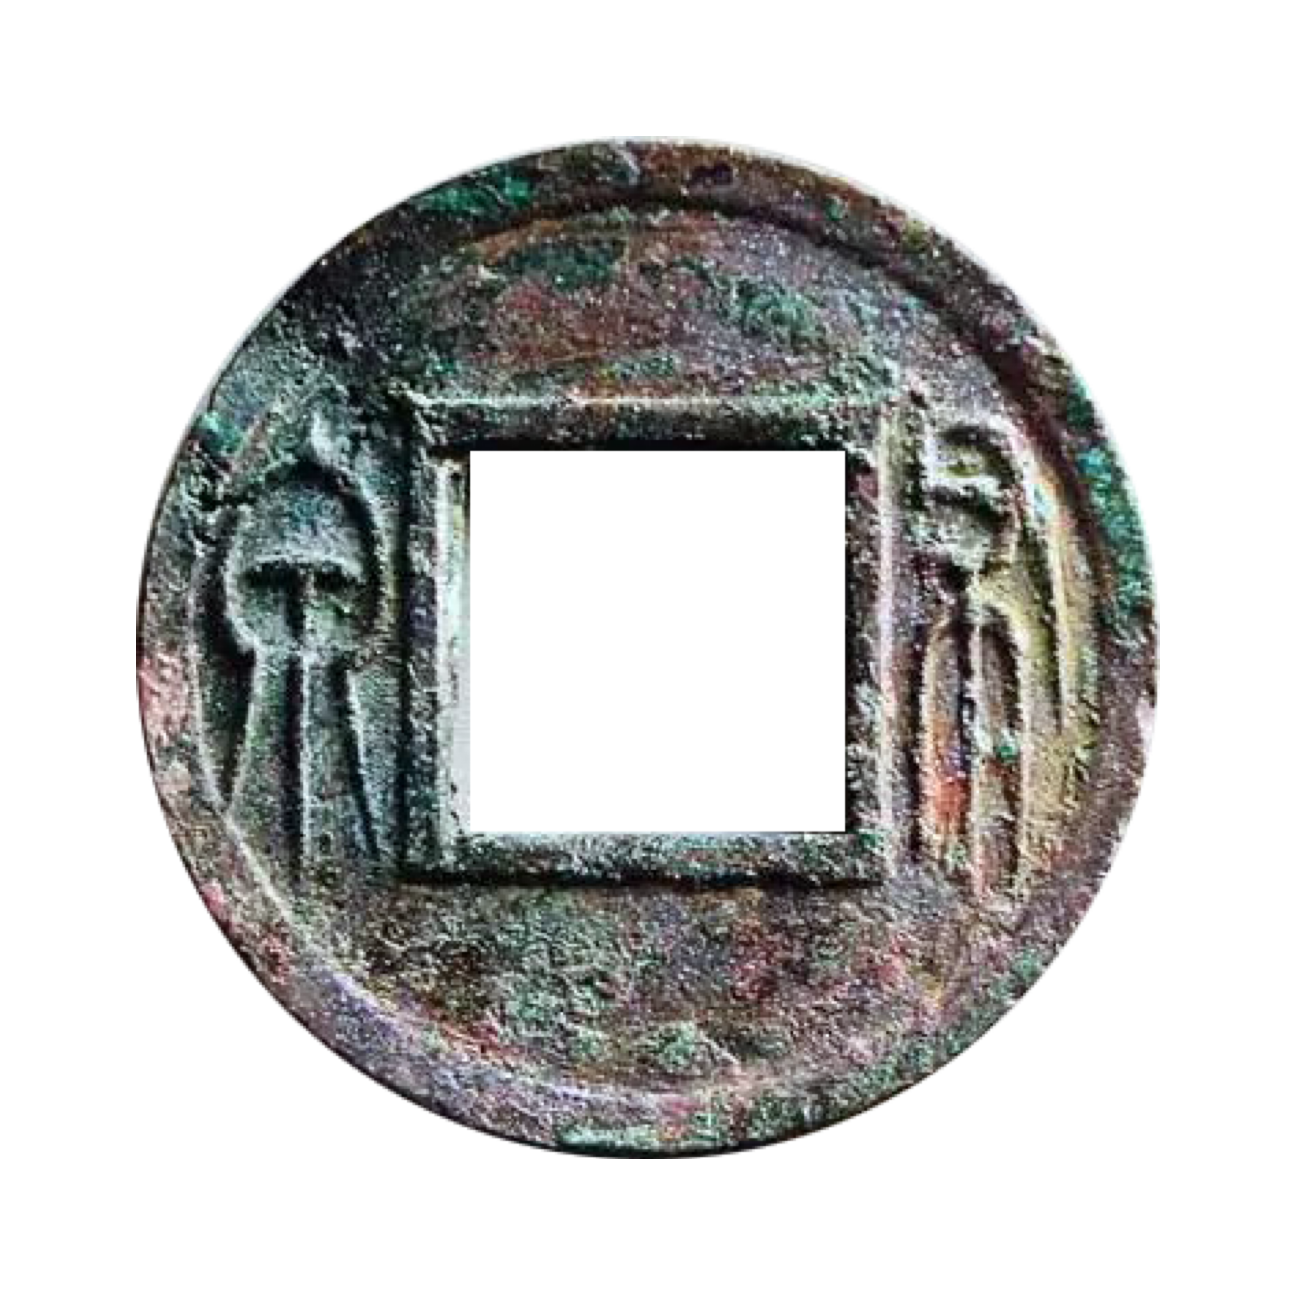 ▲王莽布泉，钱径2.3-2.6厘米，穿径1厘米，重2.3-3.8克，铜质，形态完整。